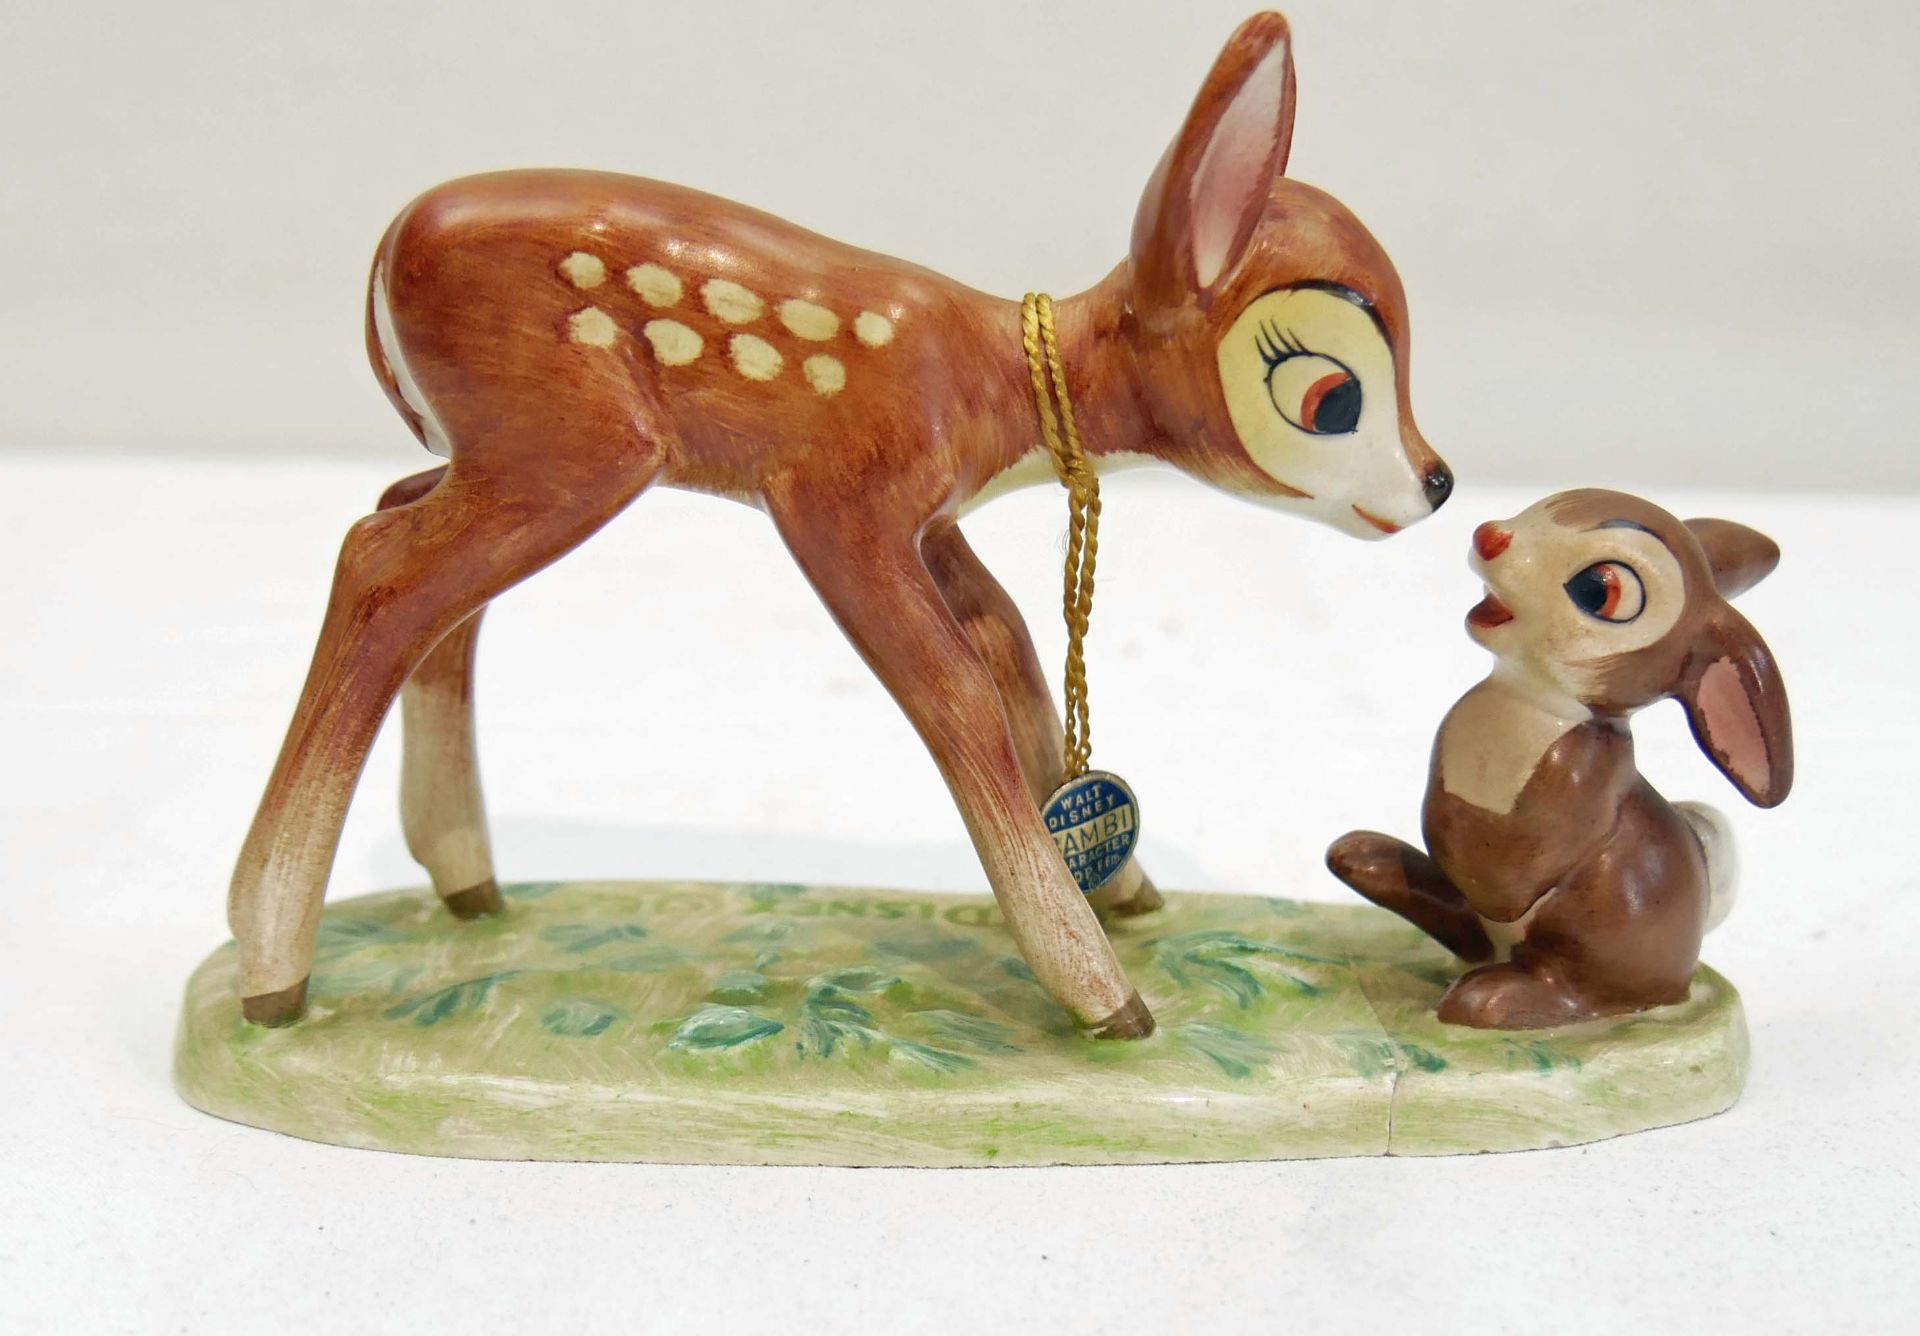 Goebel Porzellanfigur "Bambi & Klopfer", Bodenplatte gerissen und geklebt (nicht störend). Länge ca.